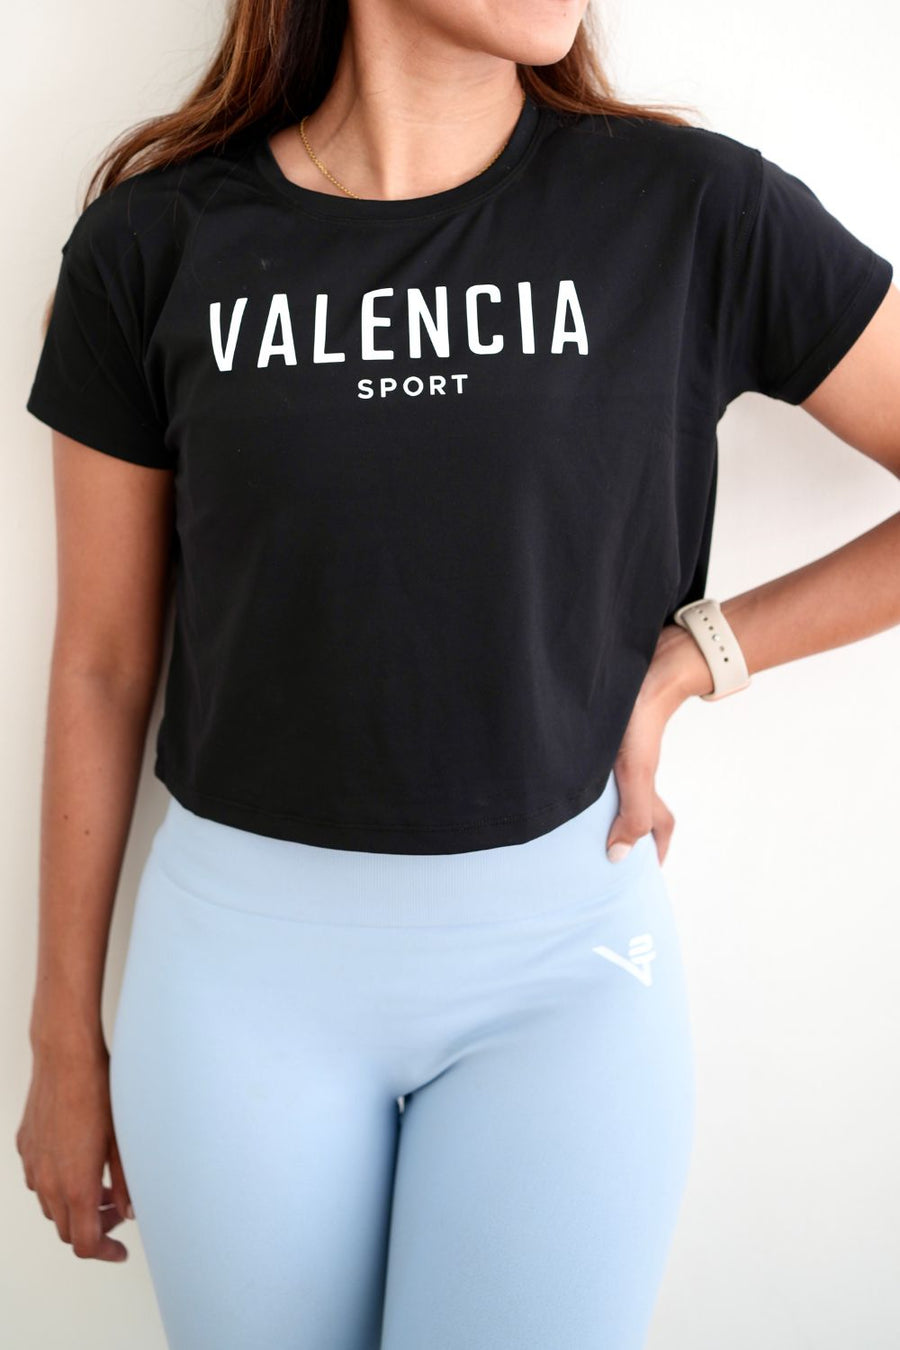 Valencia Sport